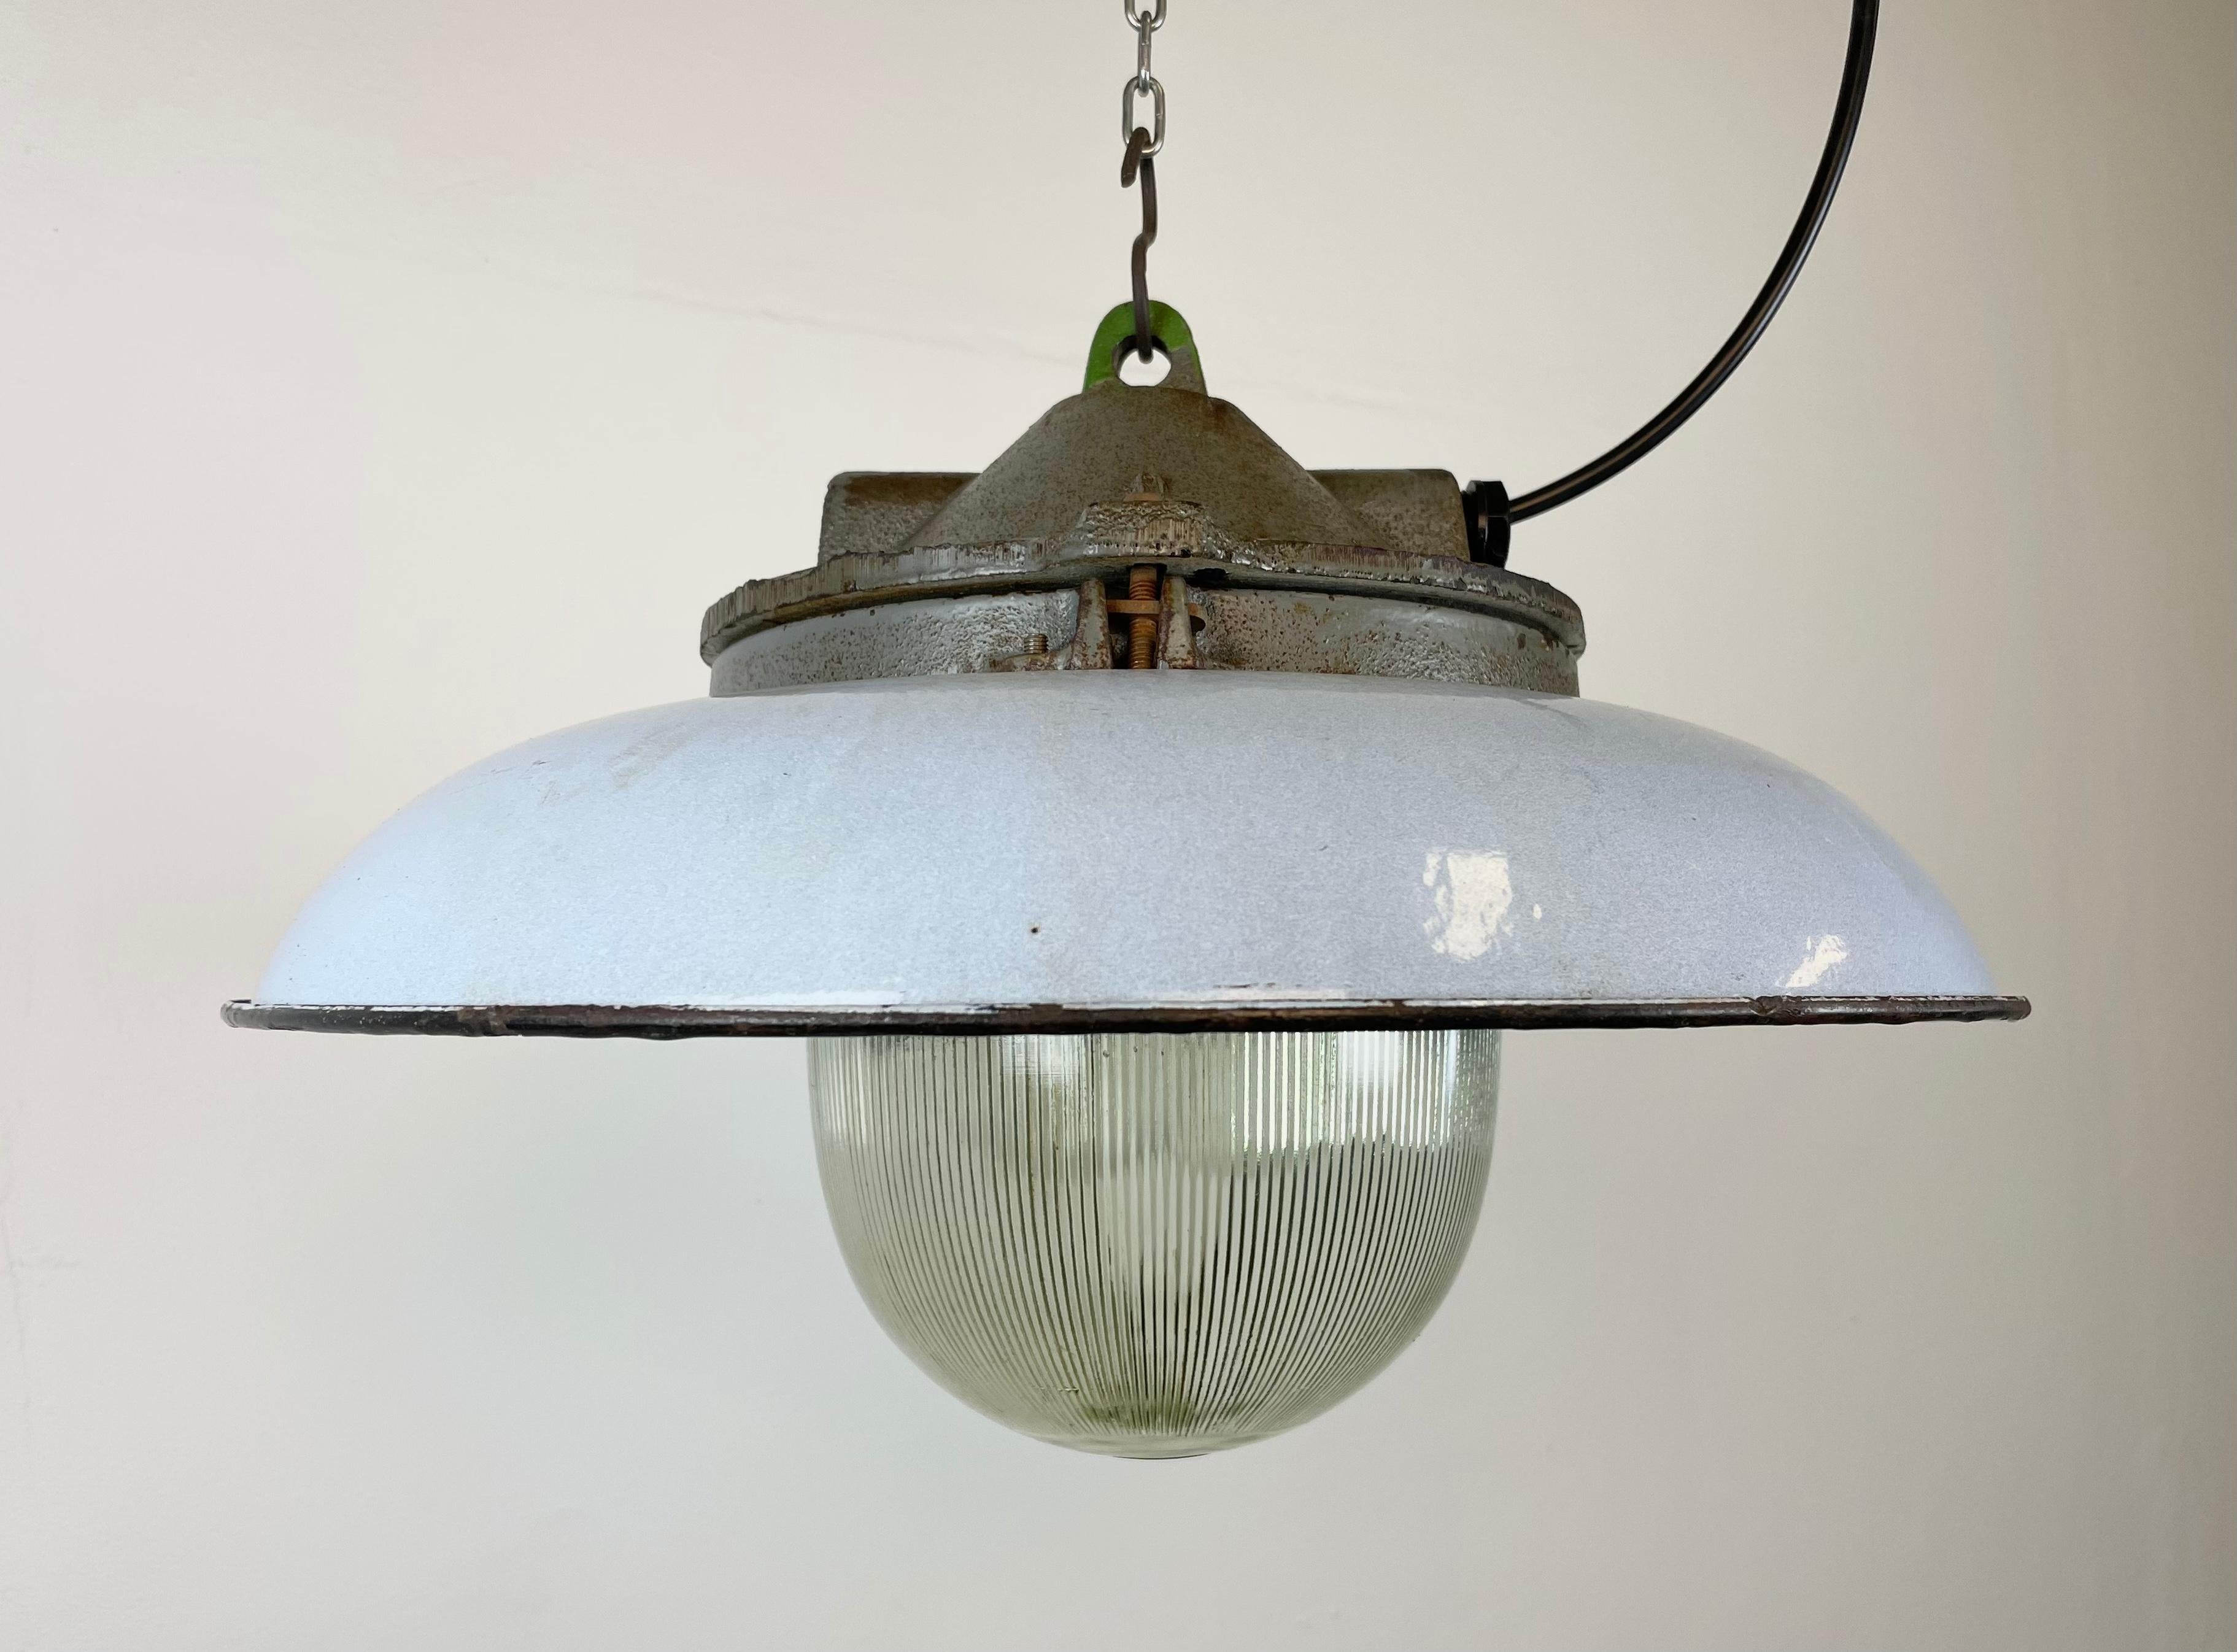 - Lampe pendante industrielle d'usine en fonte
- Fabriqué par Zaos en Pologne dans les années 1960
- Teinte émaillée bleue (grise) avec intérieur émaillé blanc 
- Couverture en verre holophane
- Poids : 7 kg.